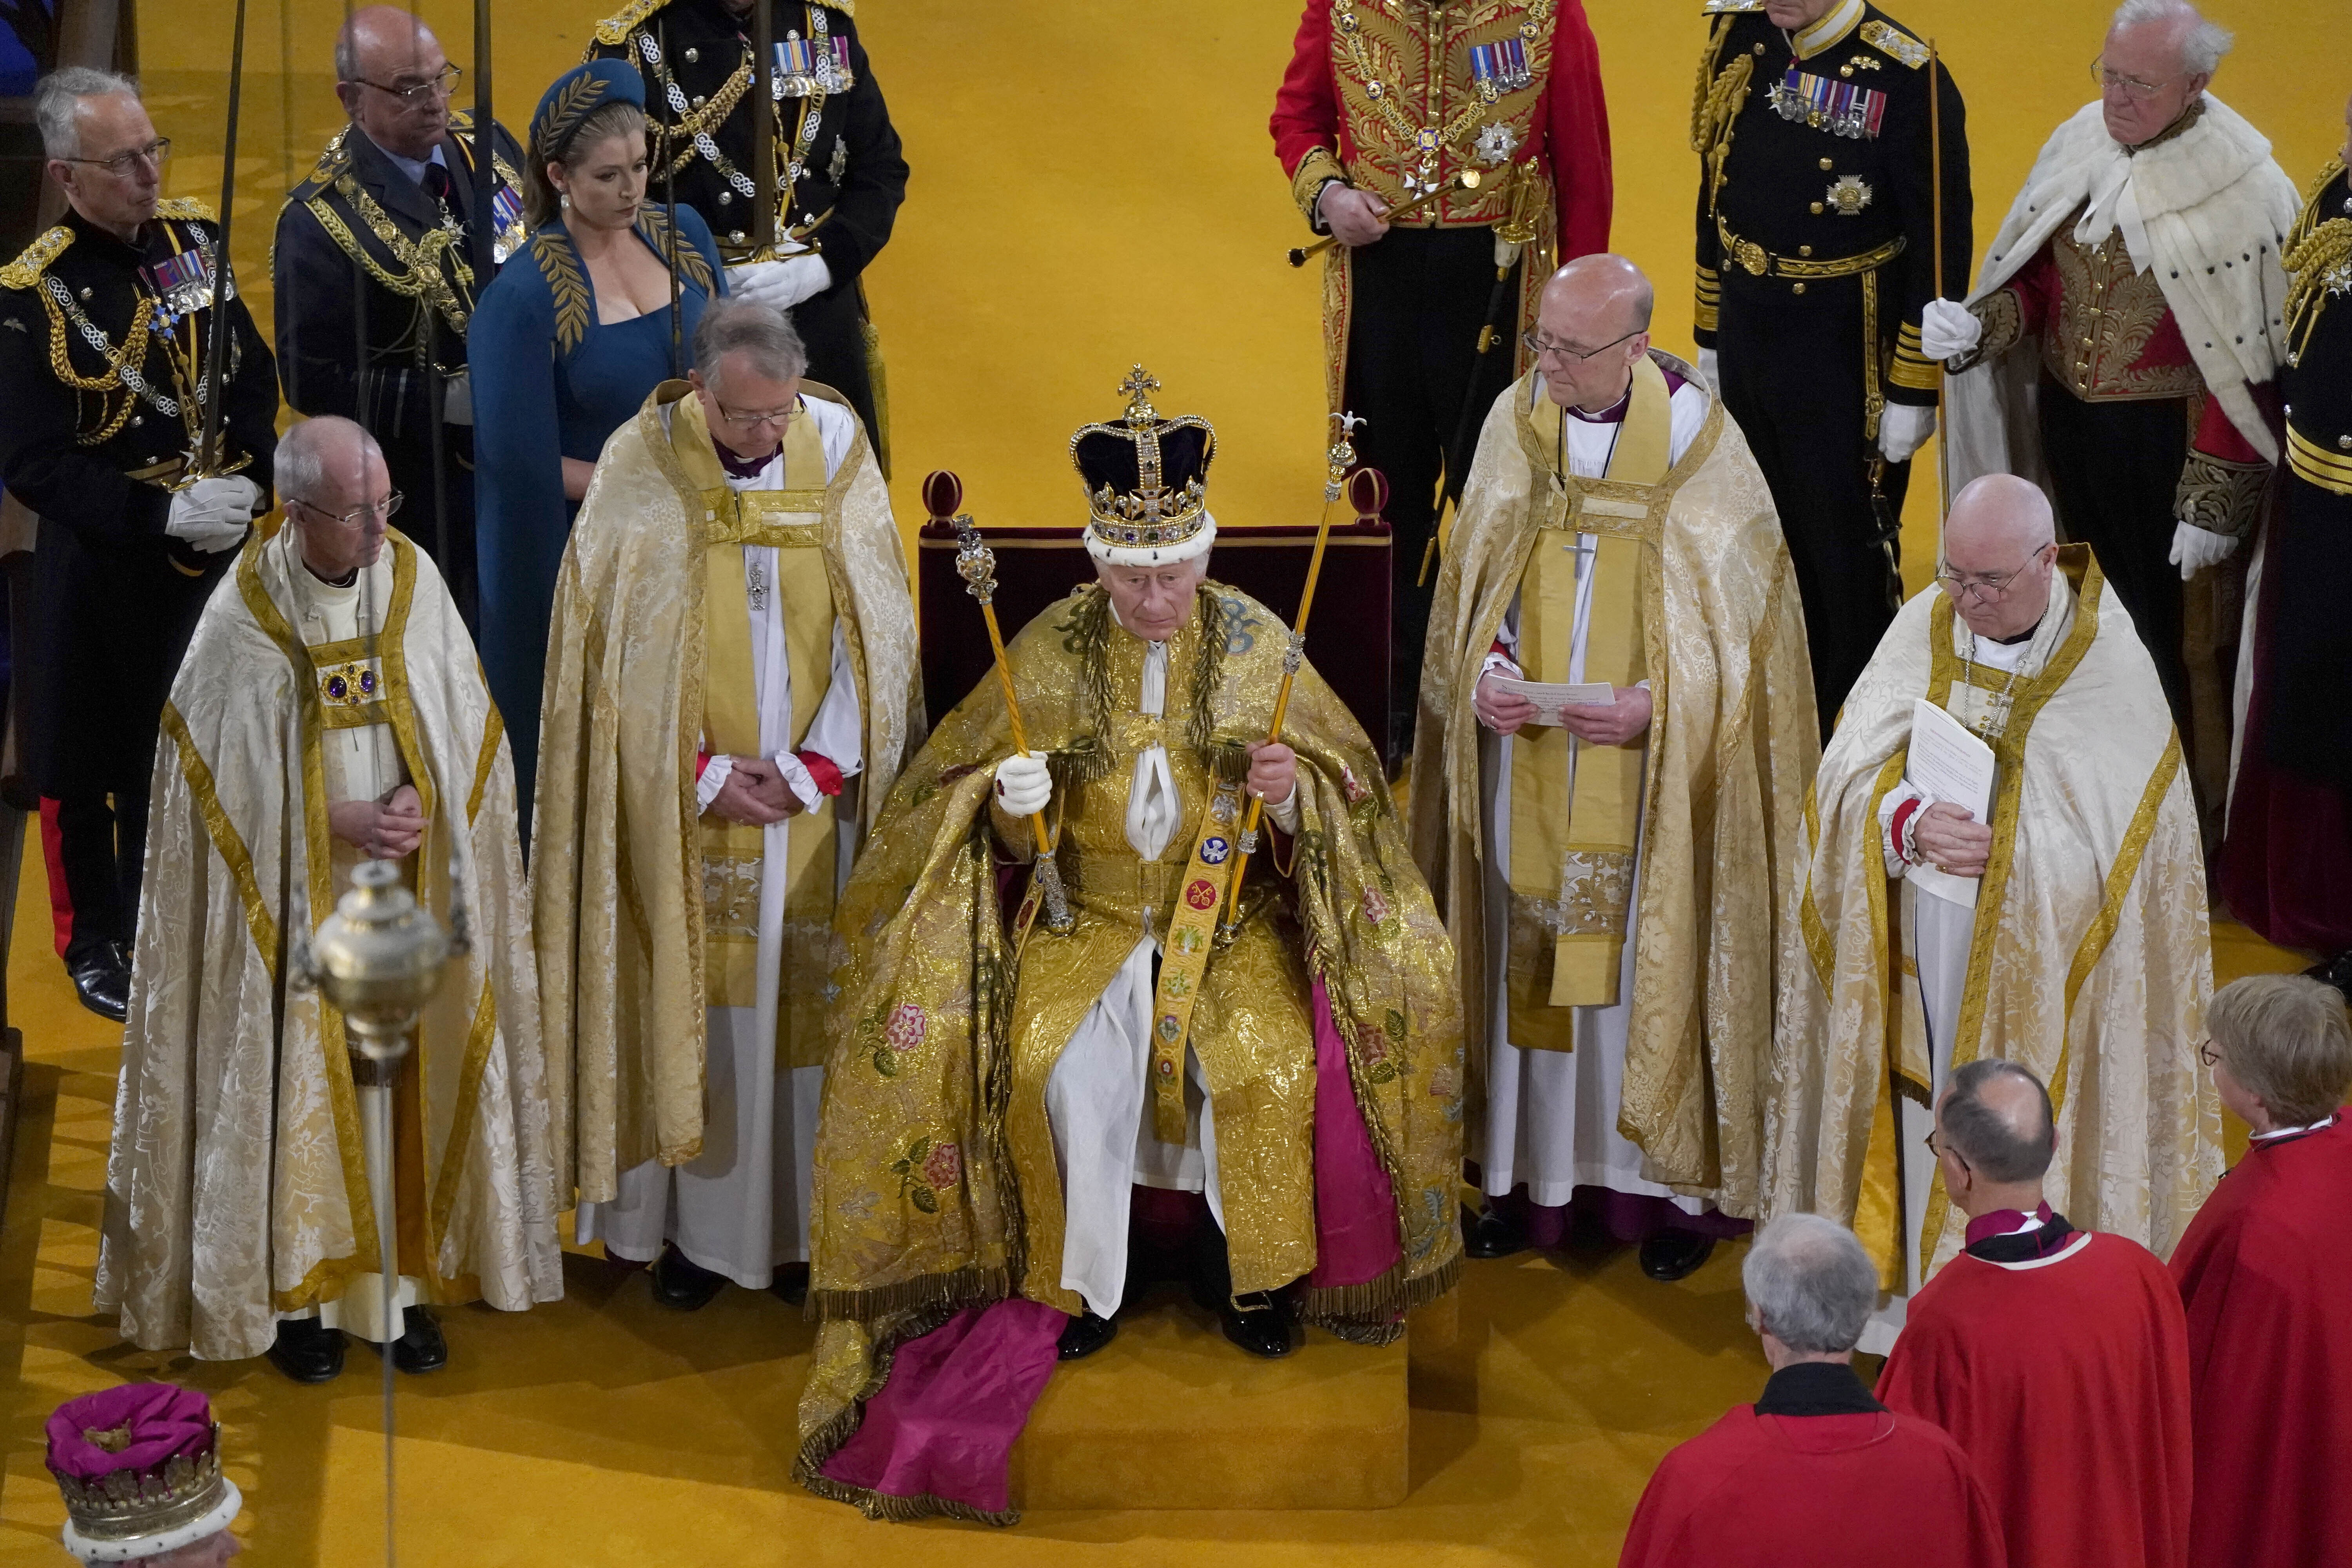 찰스 3세 영국 국왕은 6일(현지시간) 런던 웨스트민스터 사원에서 거행된 자신의 대관식에서 “하나님의 이름으로, 그의 본보기로서 나는 섬김받지 않고 섬길 것”이라고 말했다. AP연합뉴스